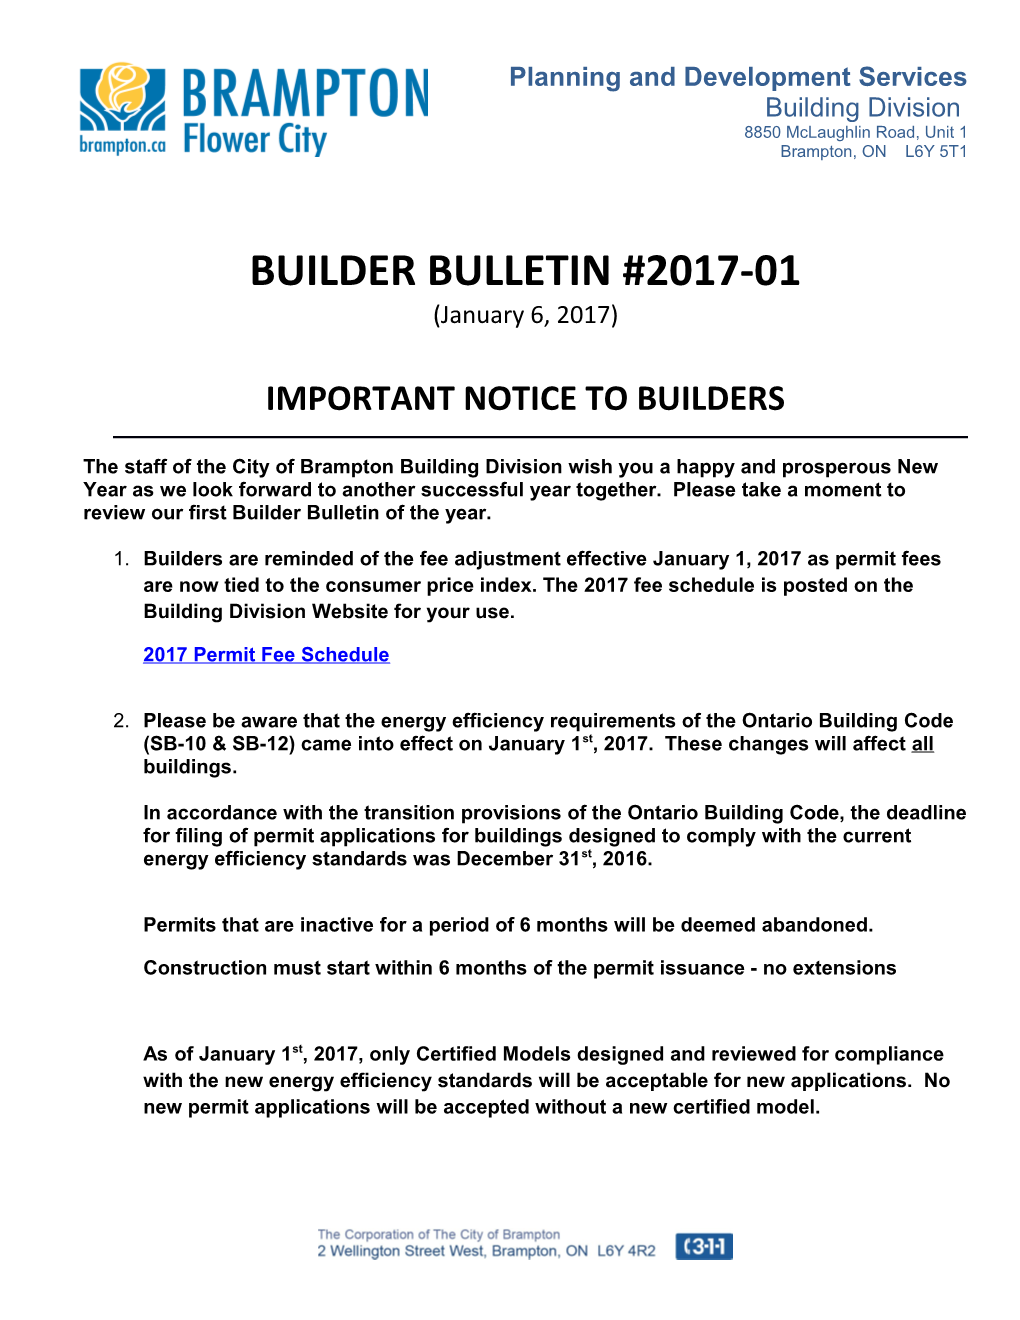 Builder Bulletin #2017-01